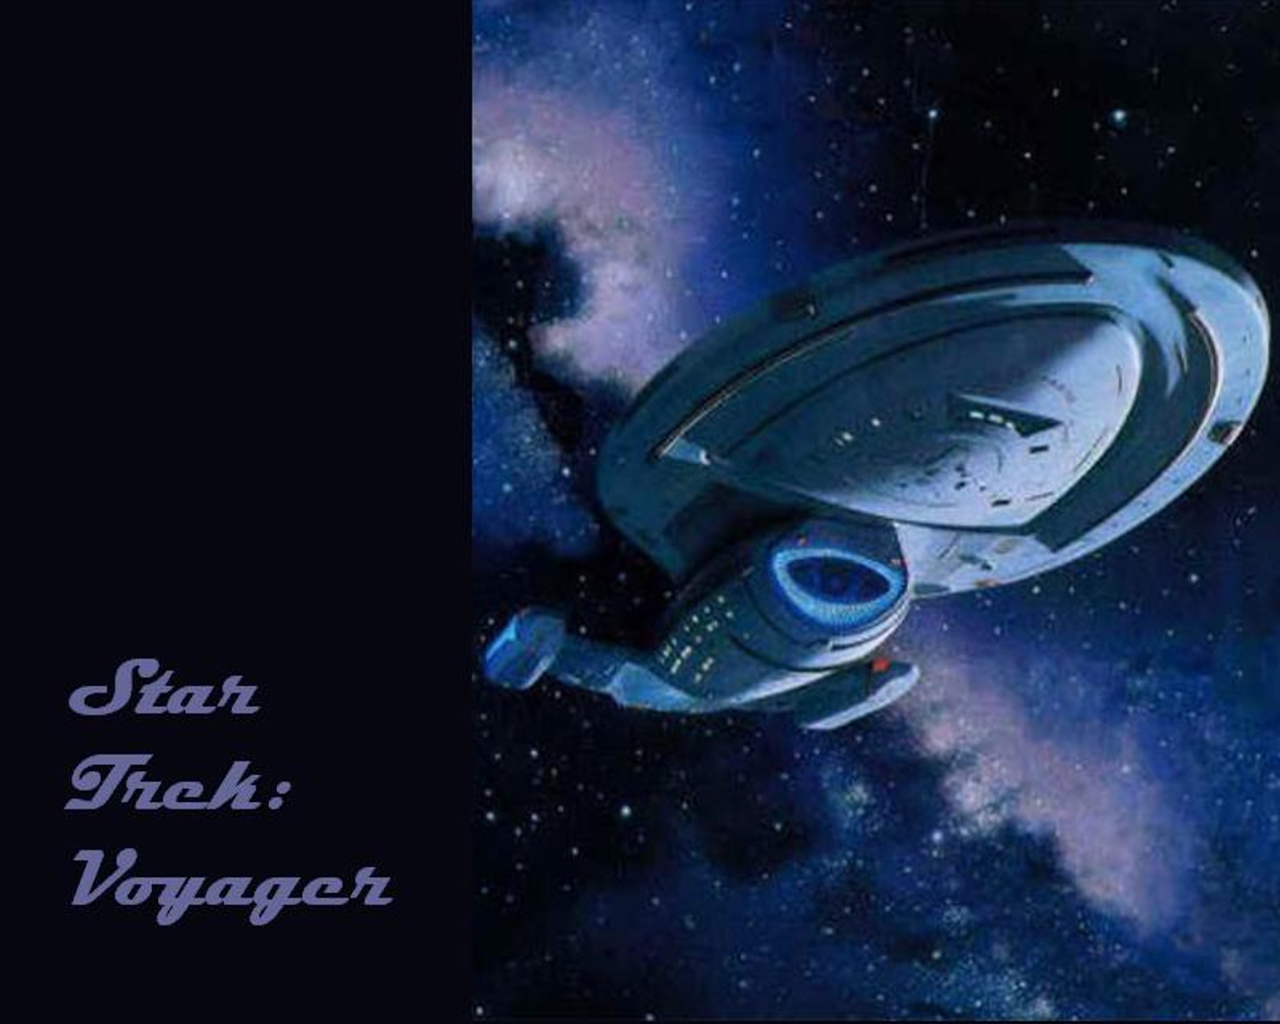 Star Trek Voyager Wallpaper From The Tv Megasite